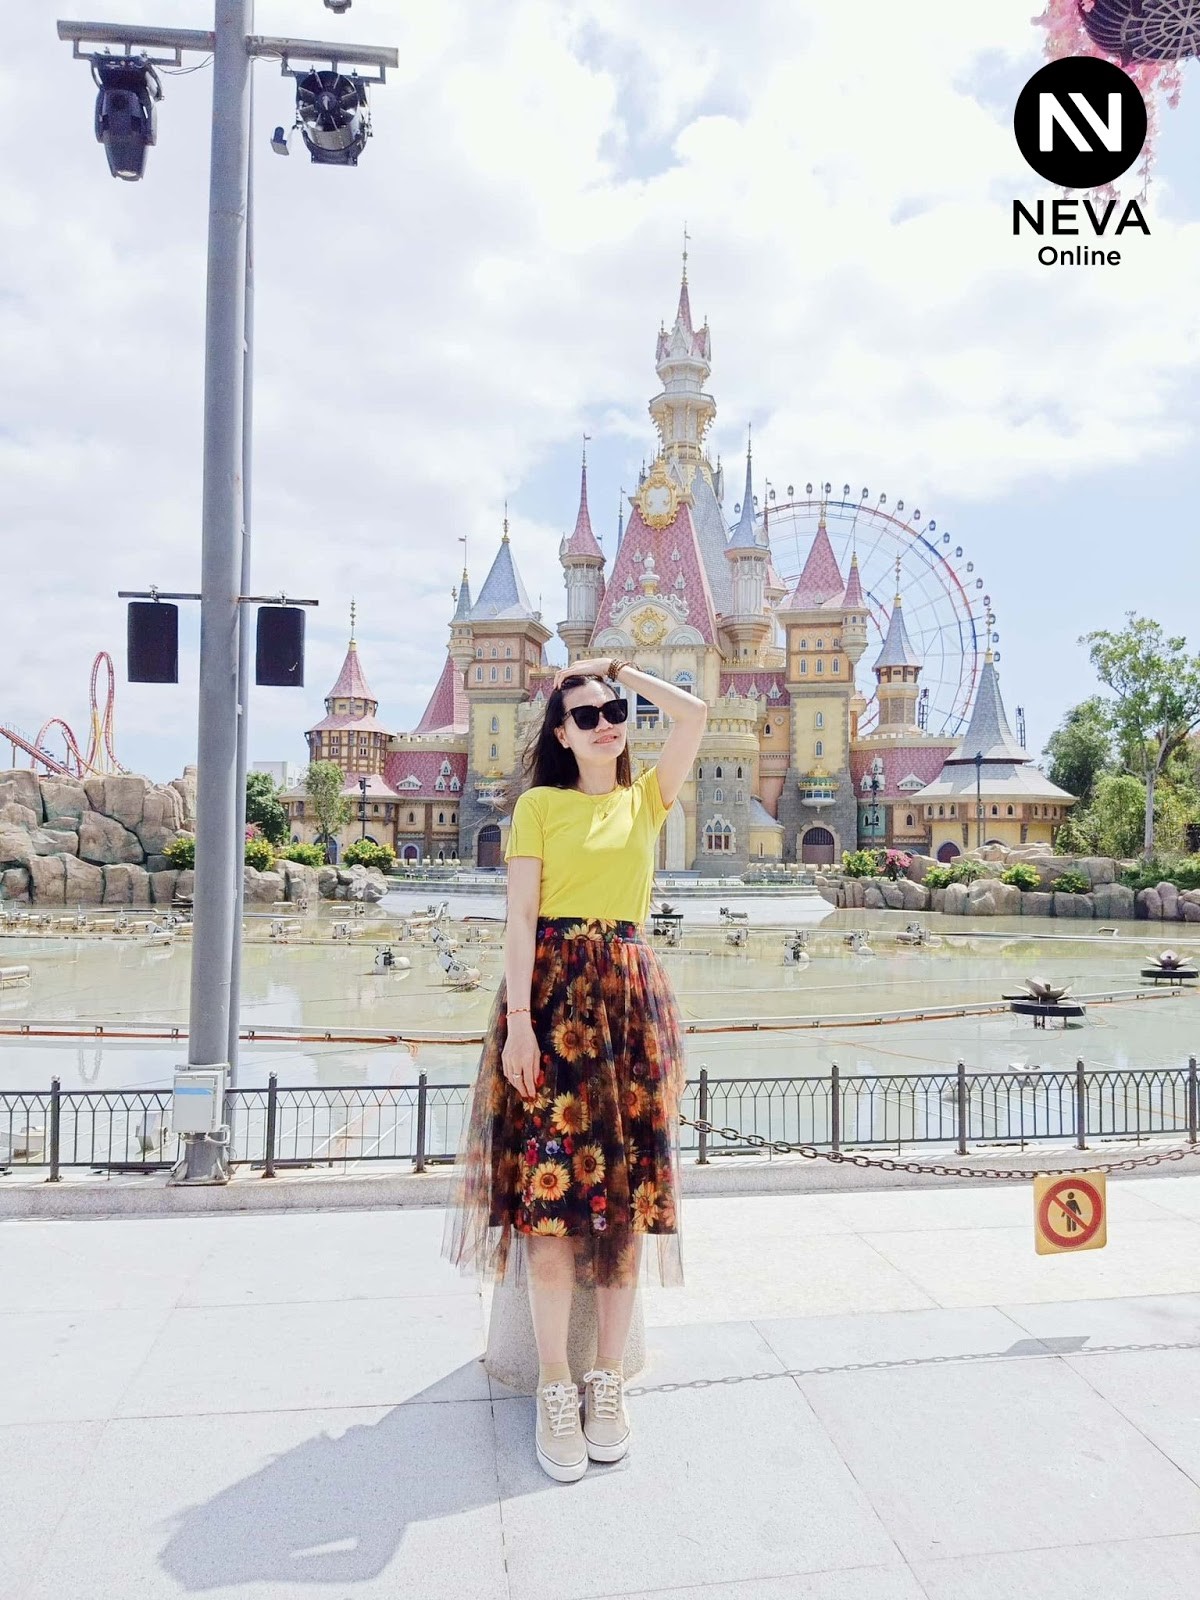 Câu chuyện khách hàng - Neva Online đã làm thay đổi cái nhìn của tôi về thời trang